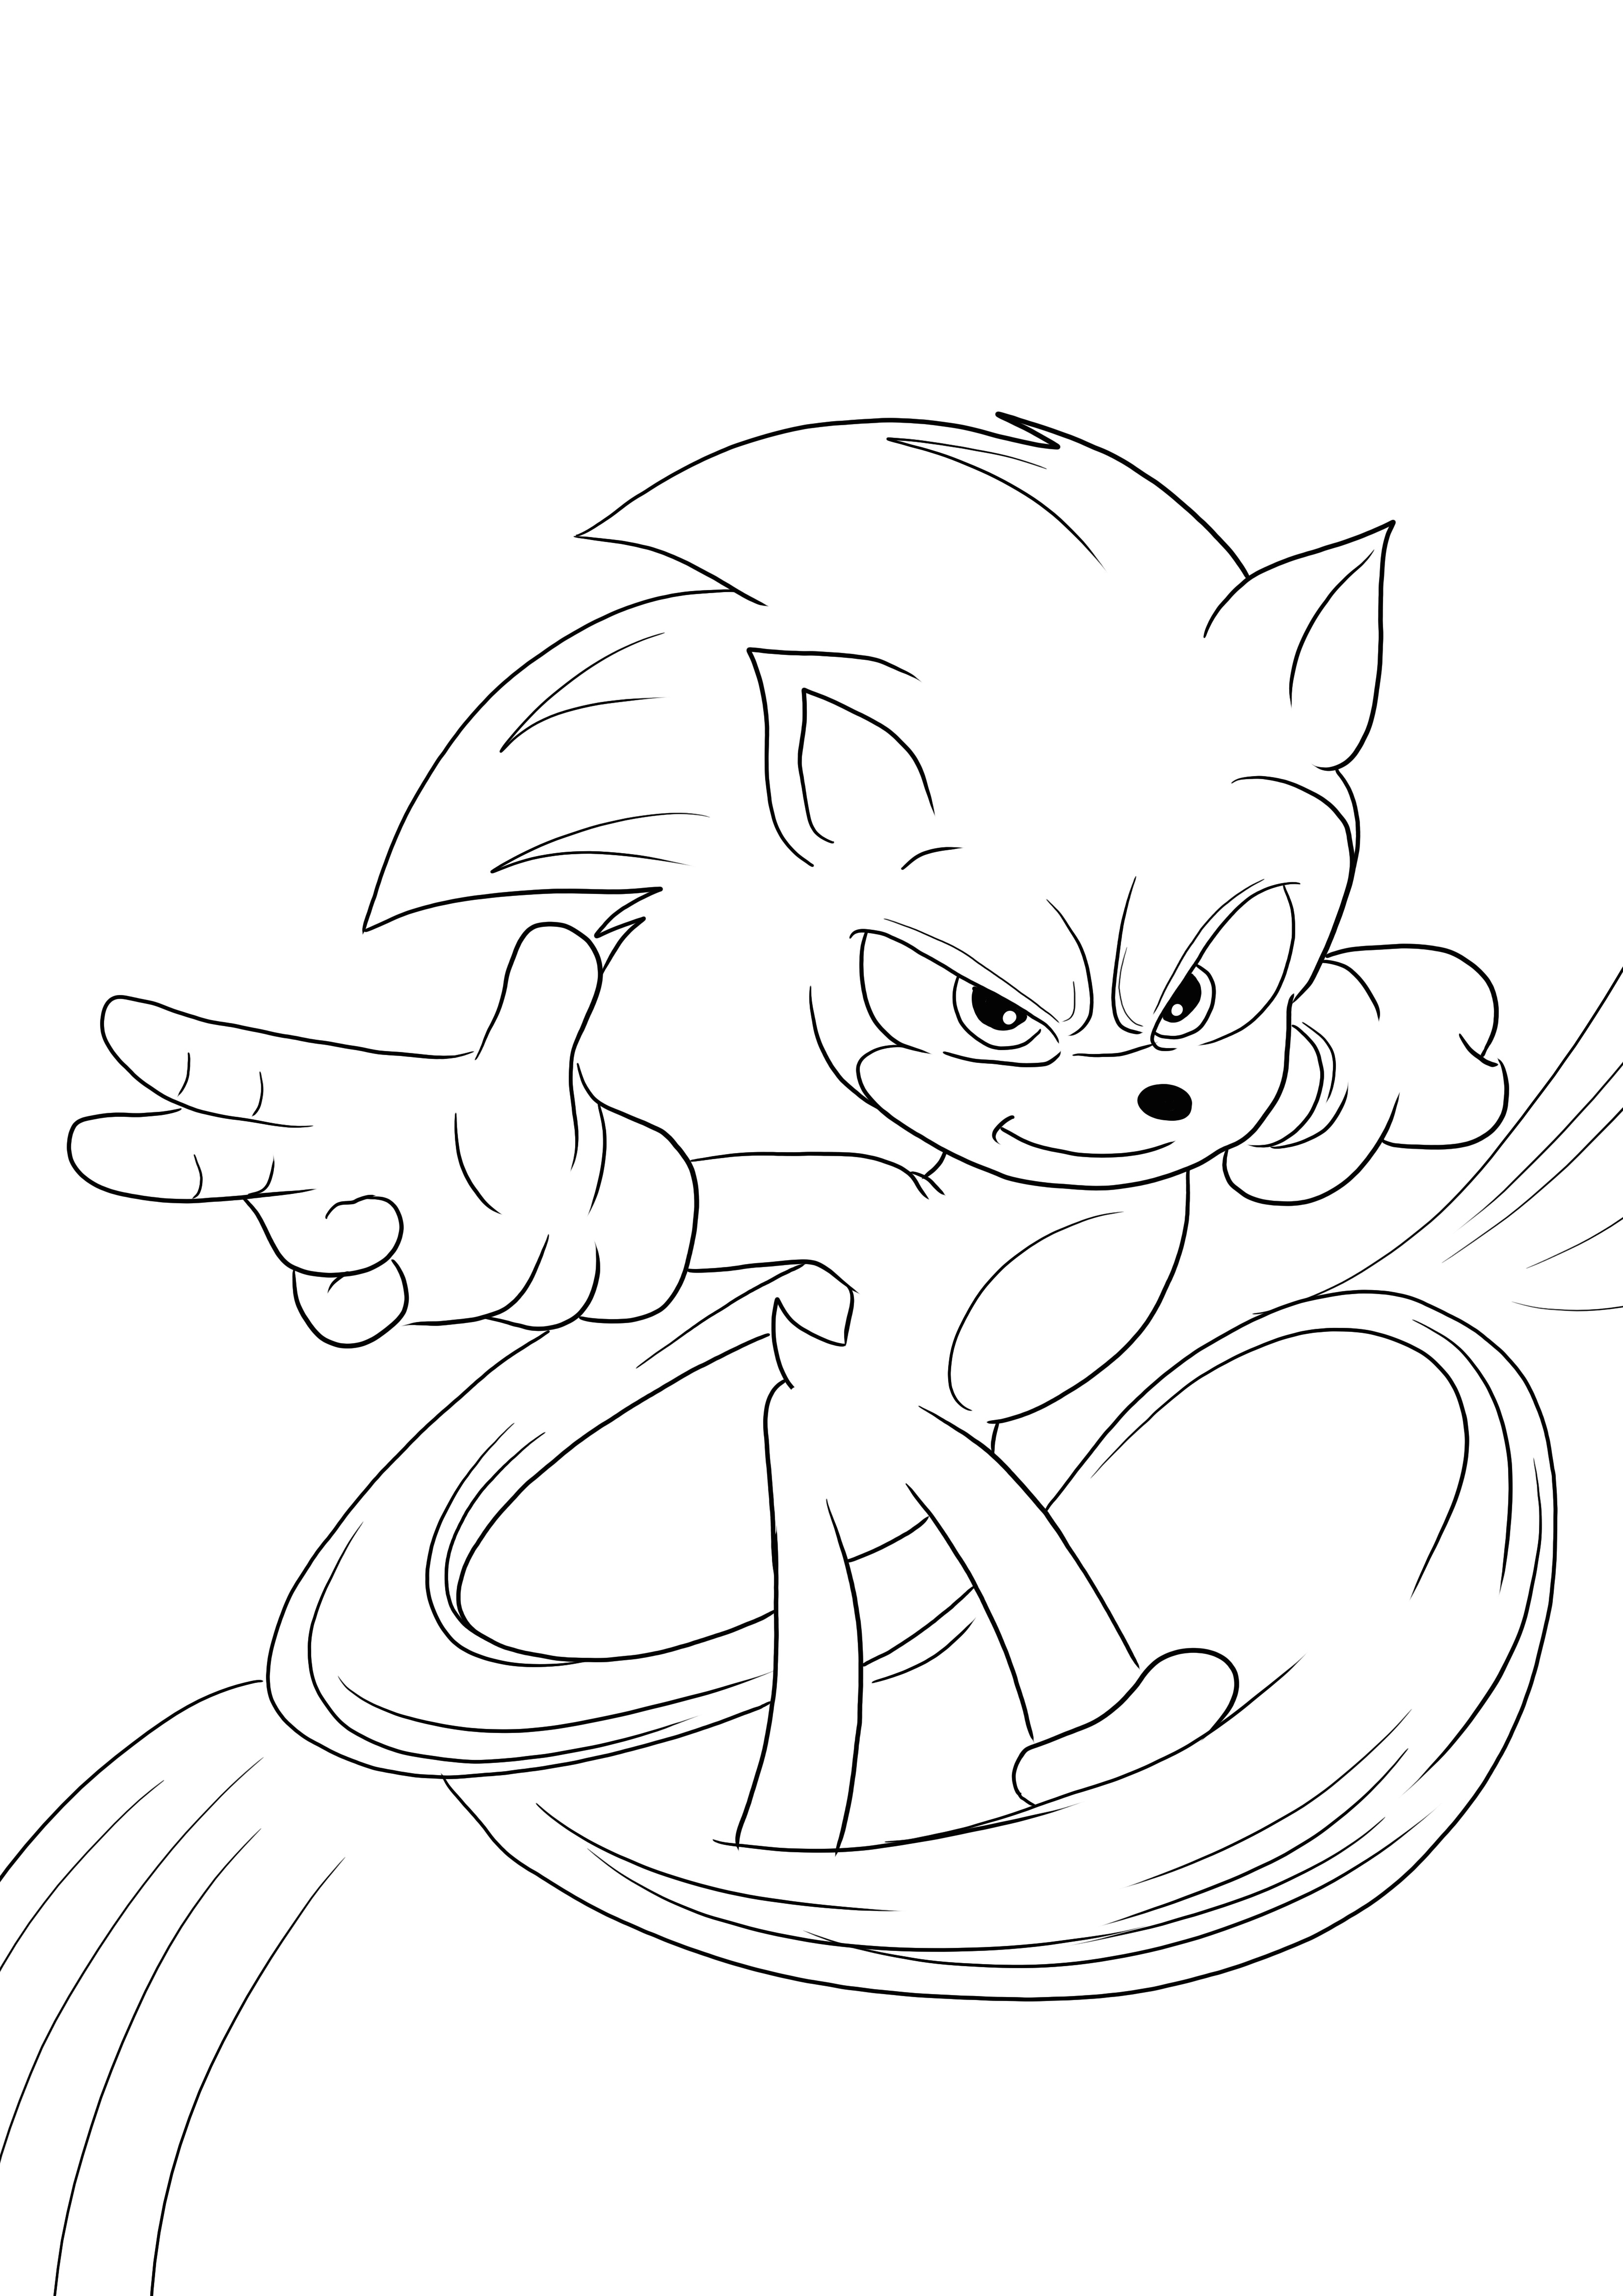 Sonic-the fast runner pour colorier et imprimer gratuitement